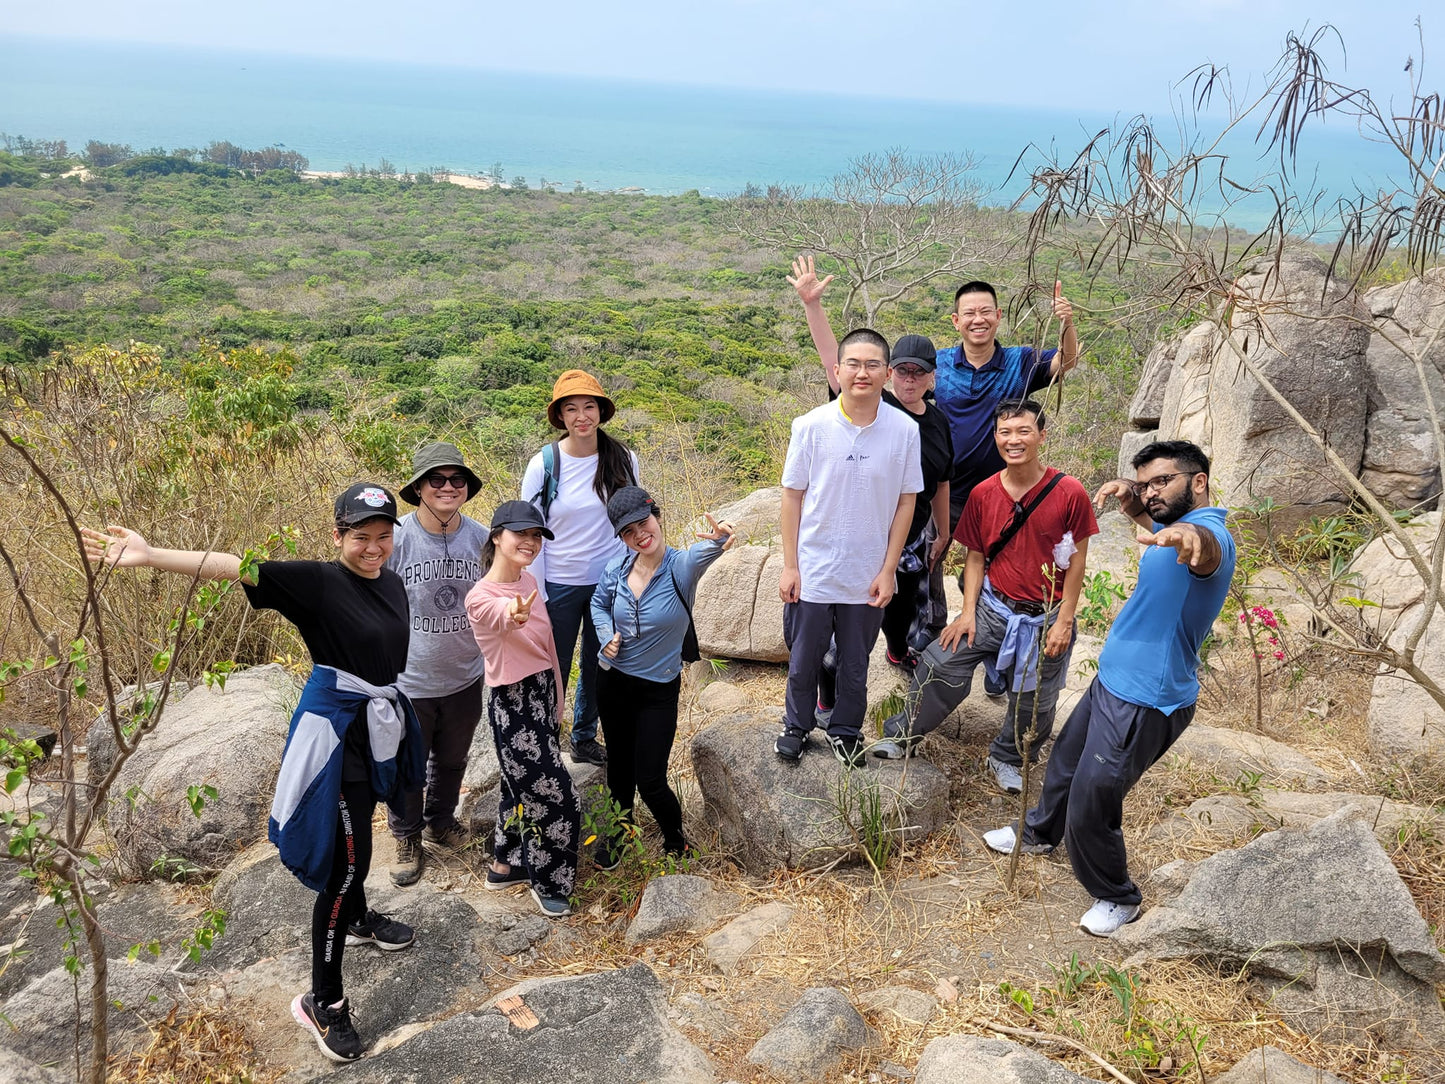 (Tour cơ bản) 14AB: Rừng Phước Bửu (Khu bảo tồn thiên nhiên): Những người tiên phong ven biển Khám phá vẻ đẹp hoang sơ của Bình Châu